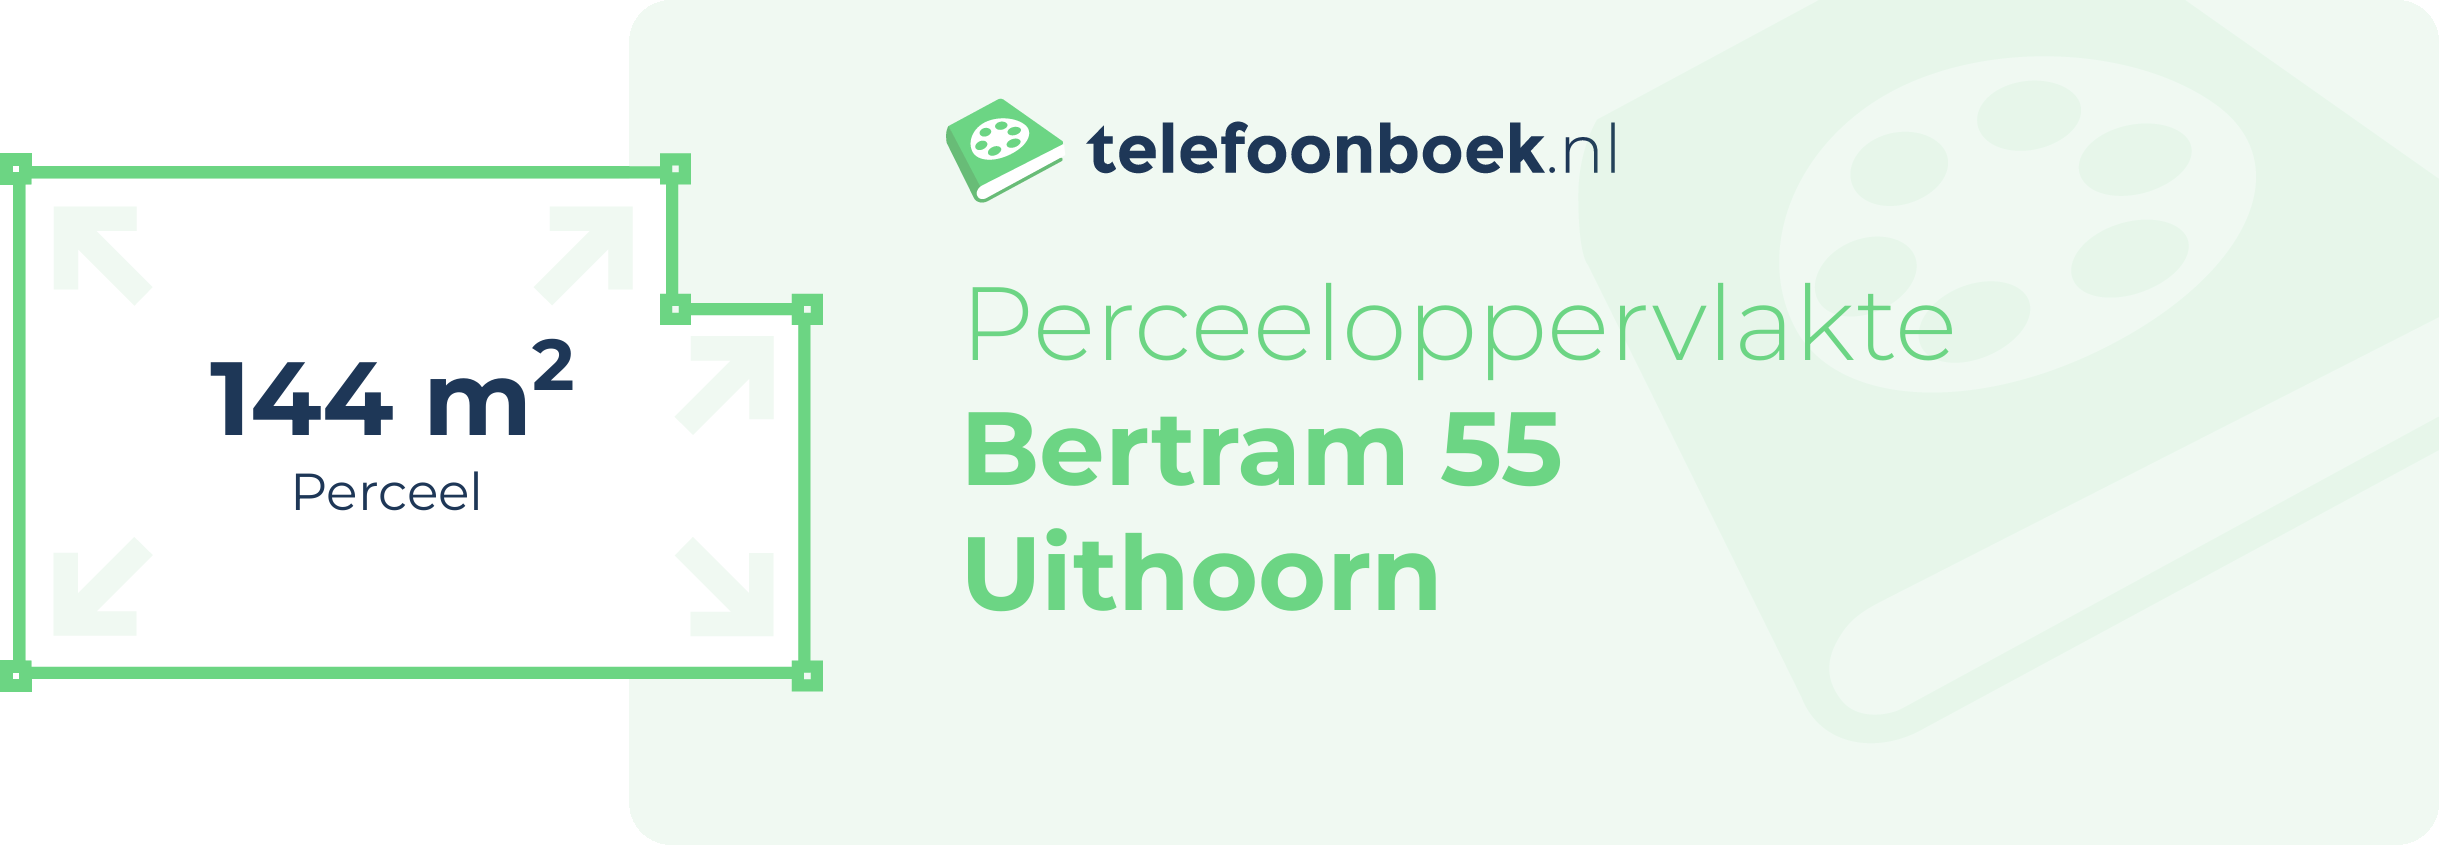 Perceeloppervlakte Bertram 55 Uithoorn